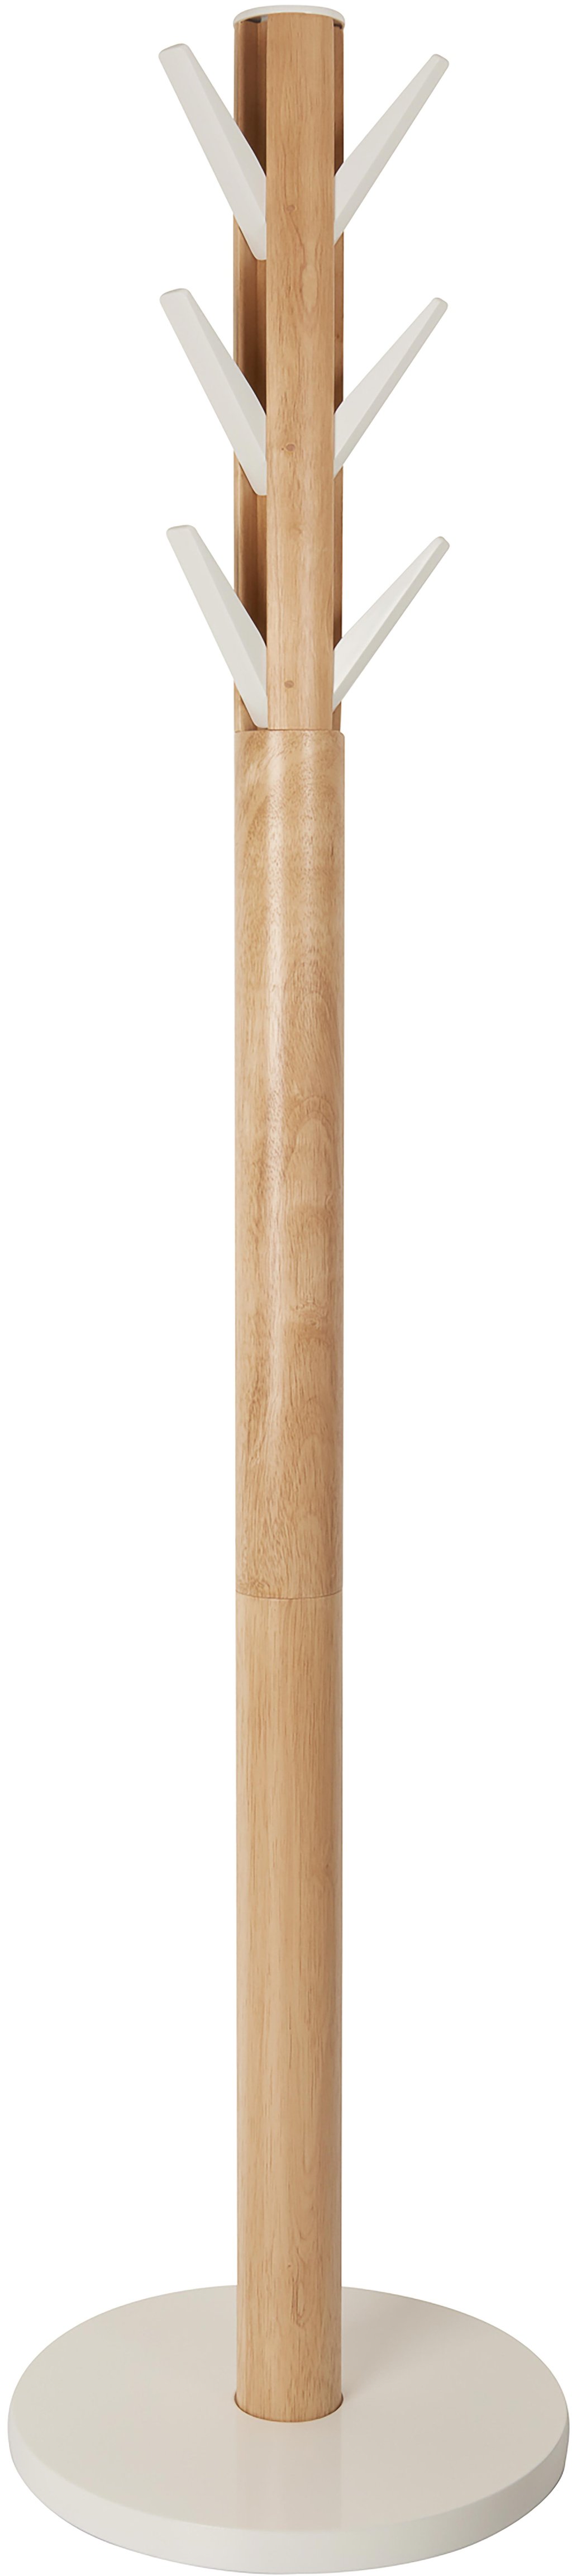 Umbra Flapper naulakko 169cm valkoinen/natural